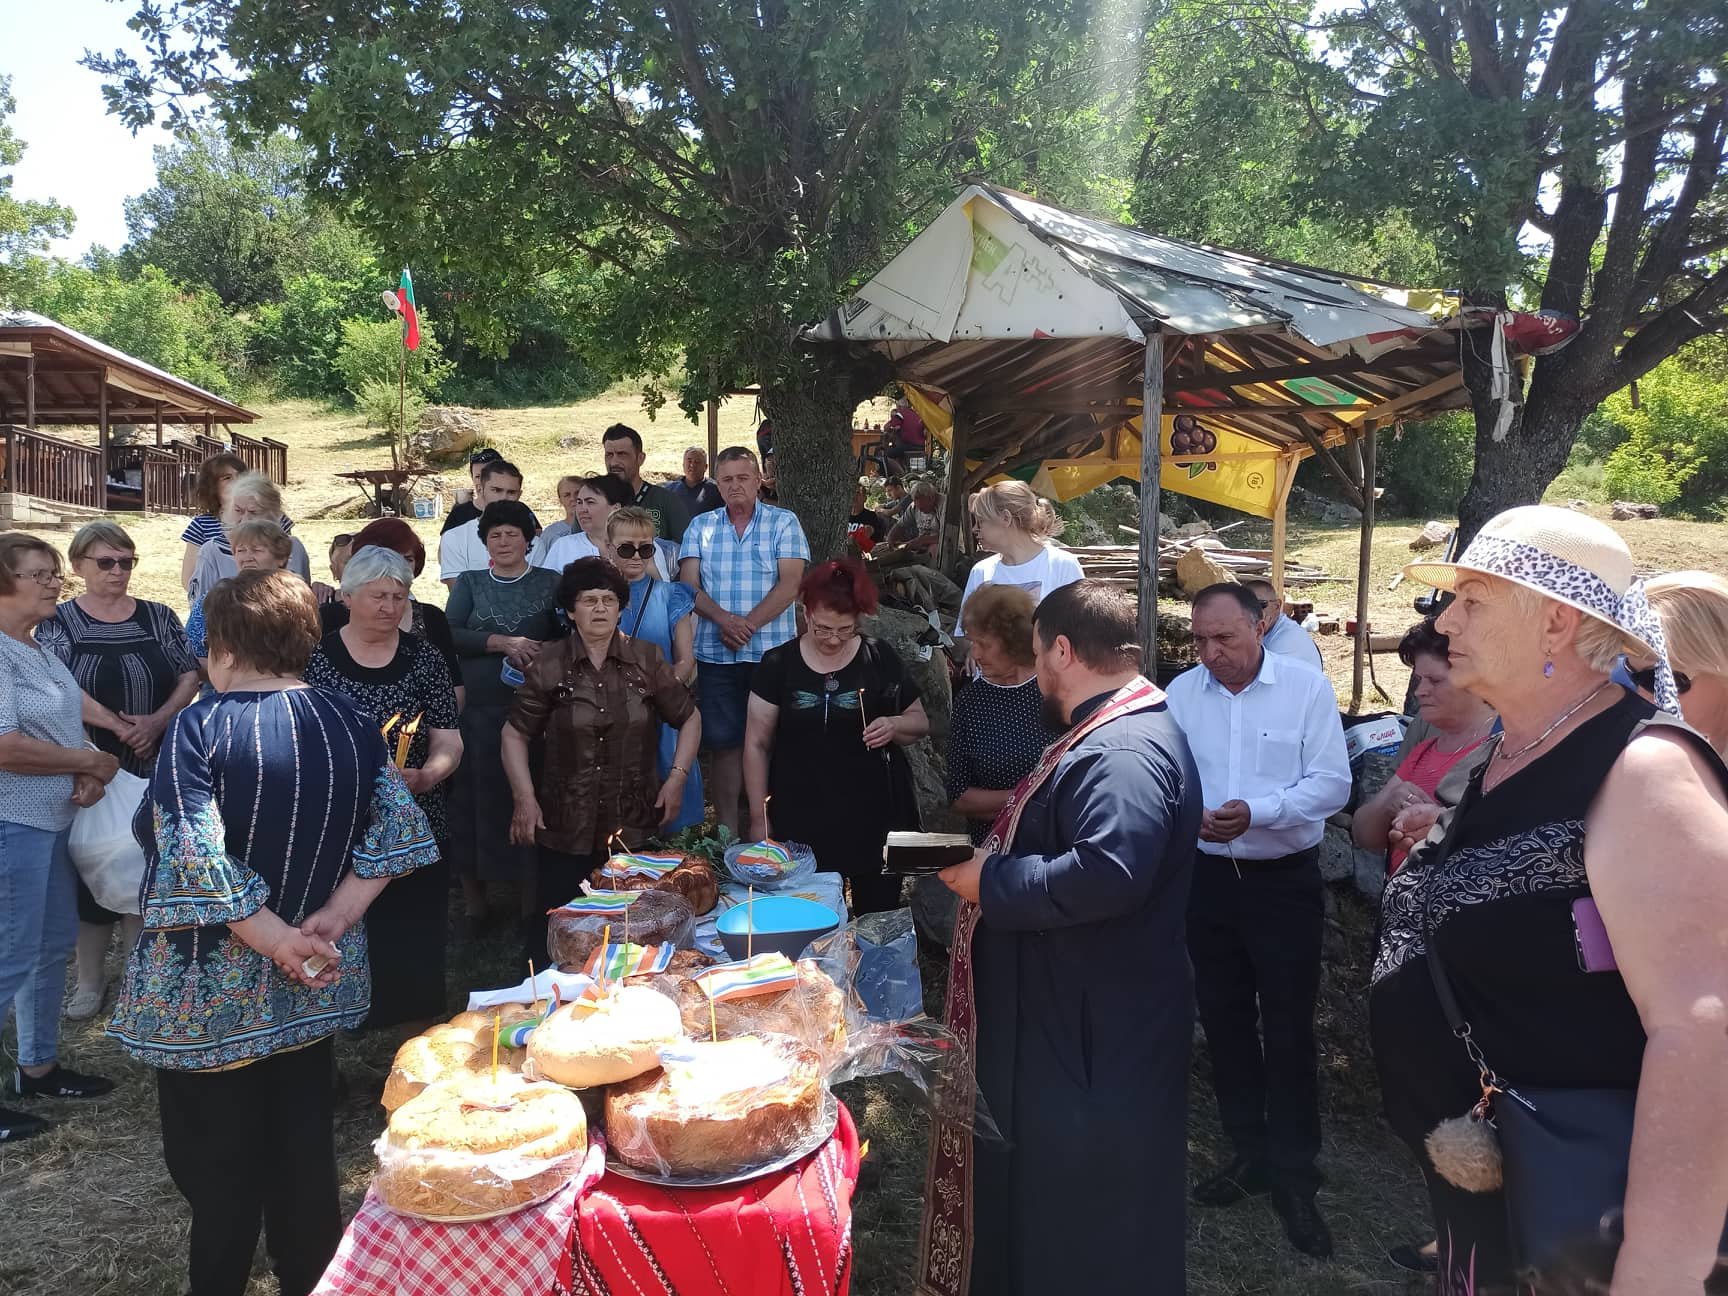 Областният управител Сарандев гостува за Спасовден на община Струмяни